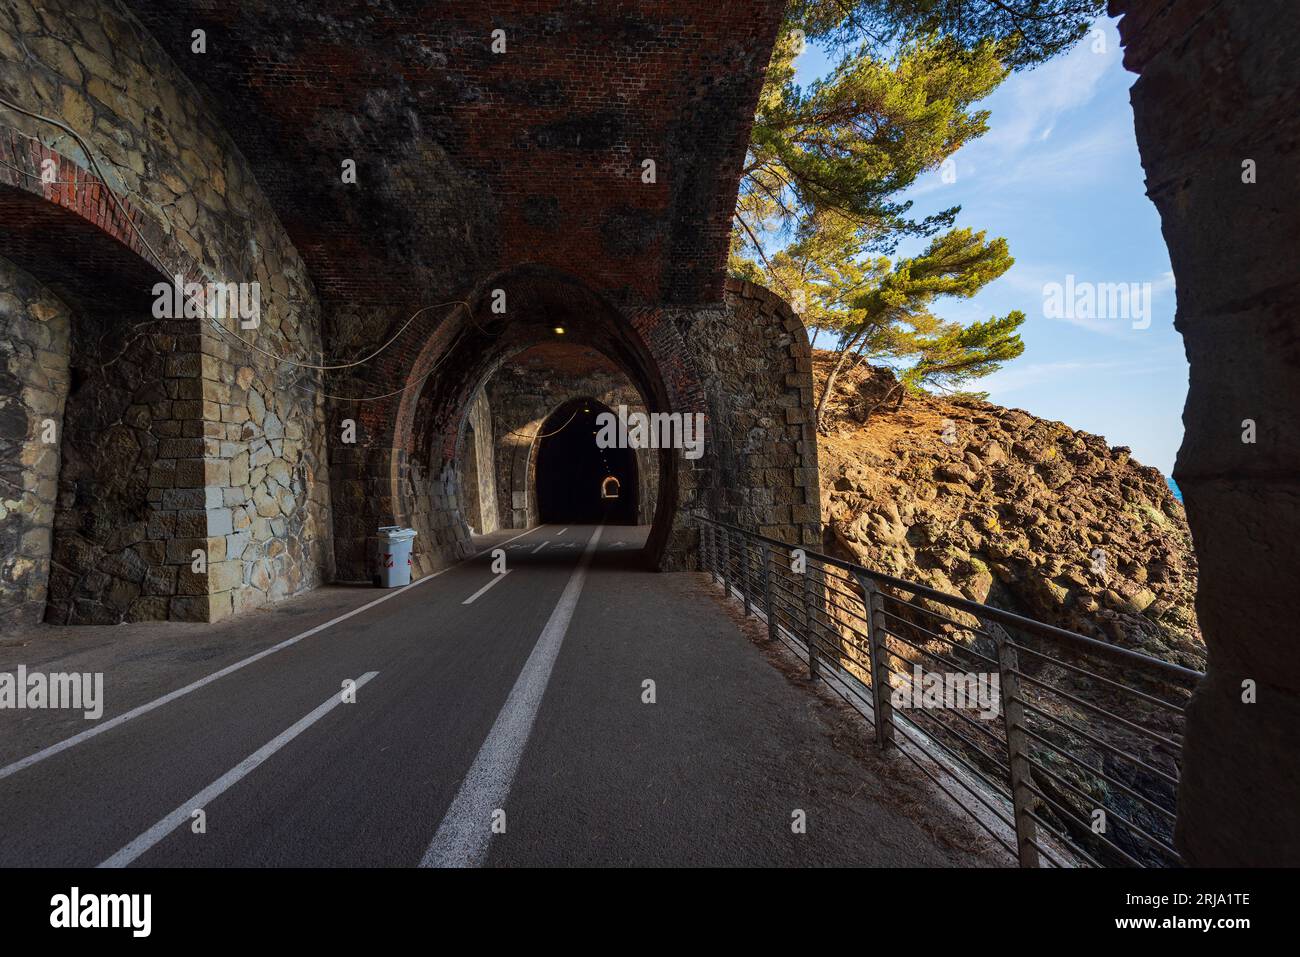 Percorso ciclabile e pedonale all'interno di un vecchio tunnel ferroviario in disuso. La strada collega i tre paesi di Levanto, Bonassola e Framura, Liguria. Foto Stock